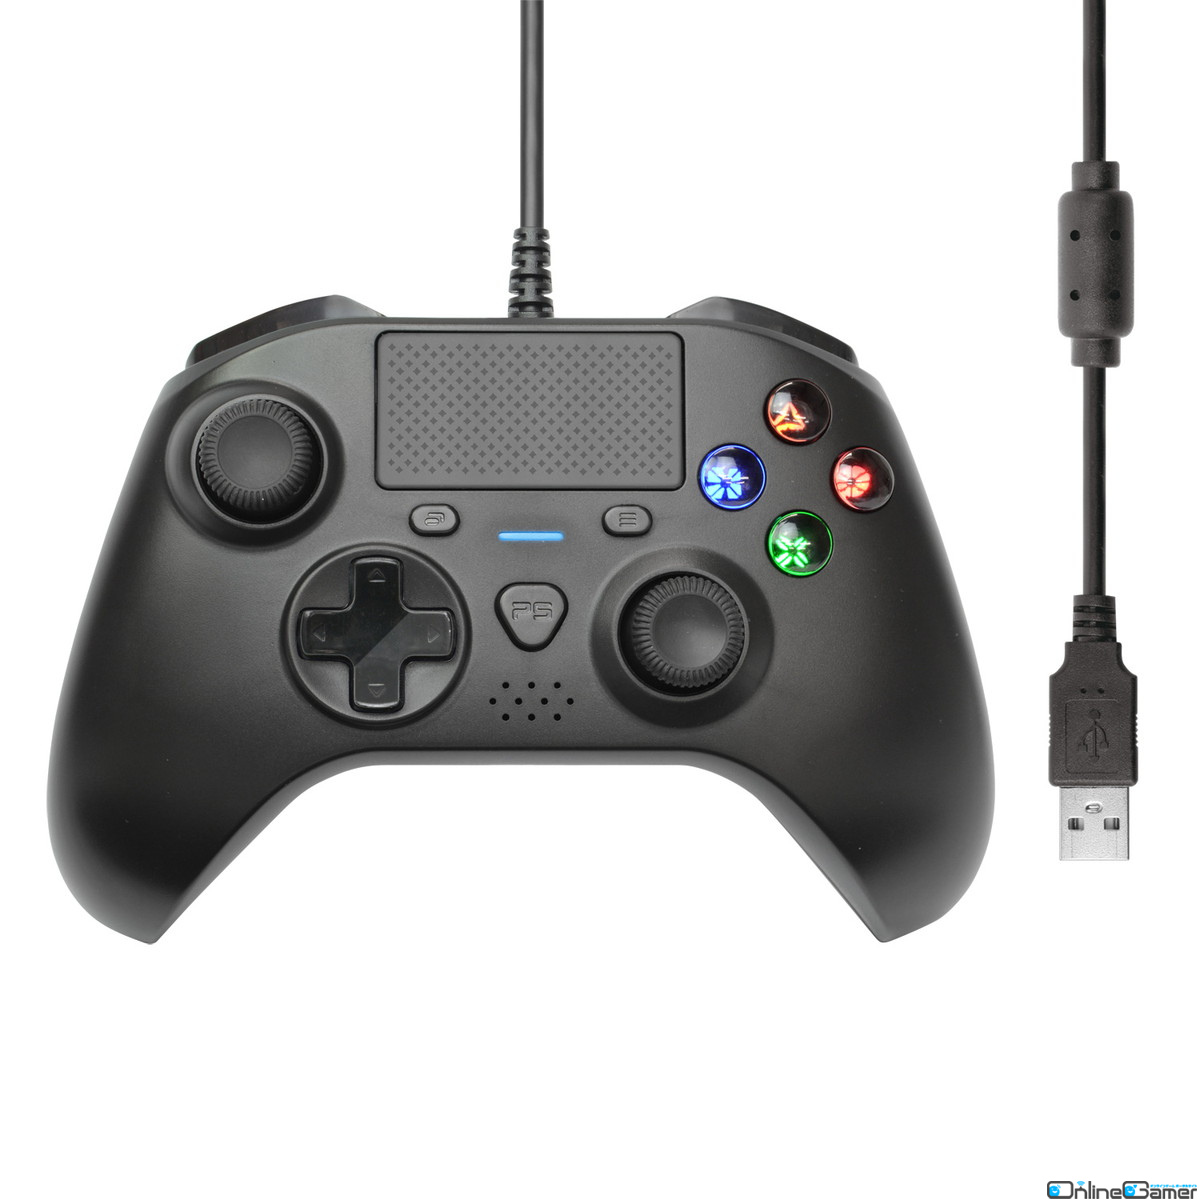 PS4/PC向けコントローラー「シンプルバトルパッド4」が3月23日に発売！左右スティックの非対象配置で6軸ジャイロセンサーなども内蔵の画像